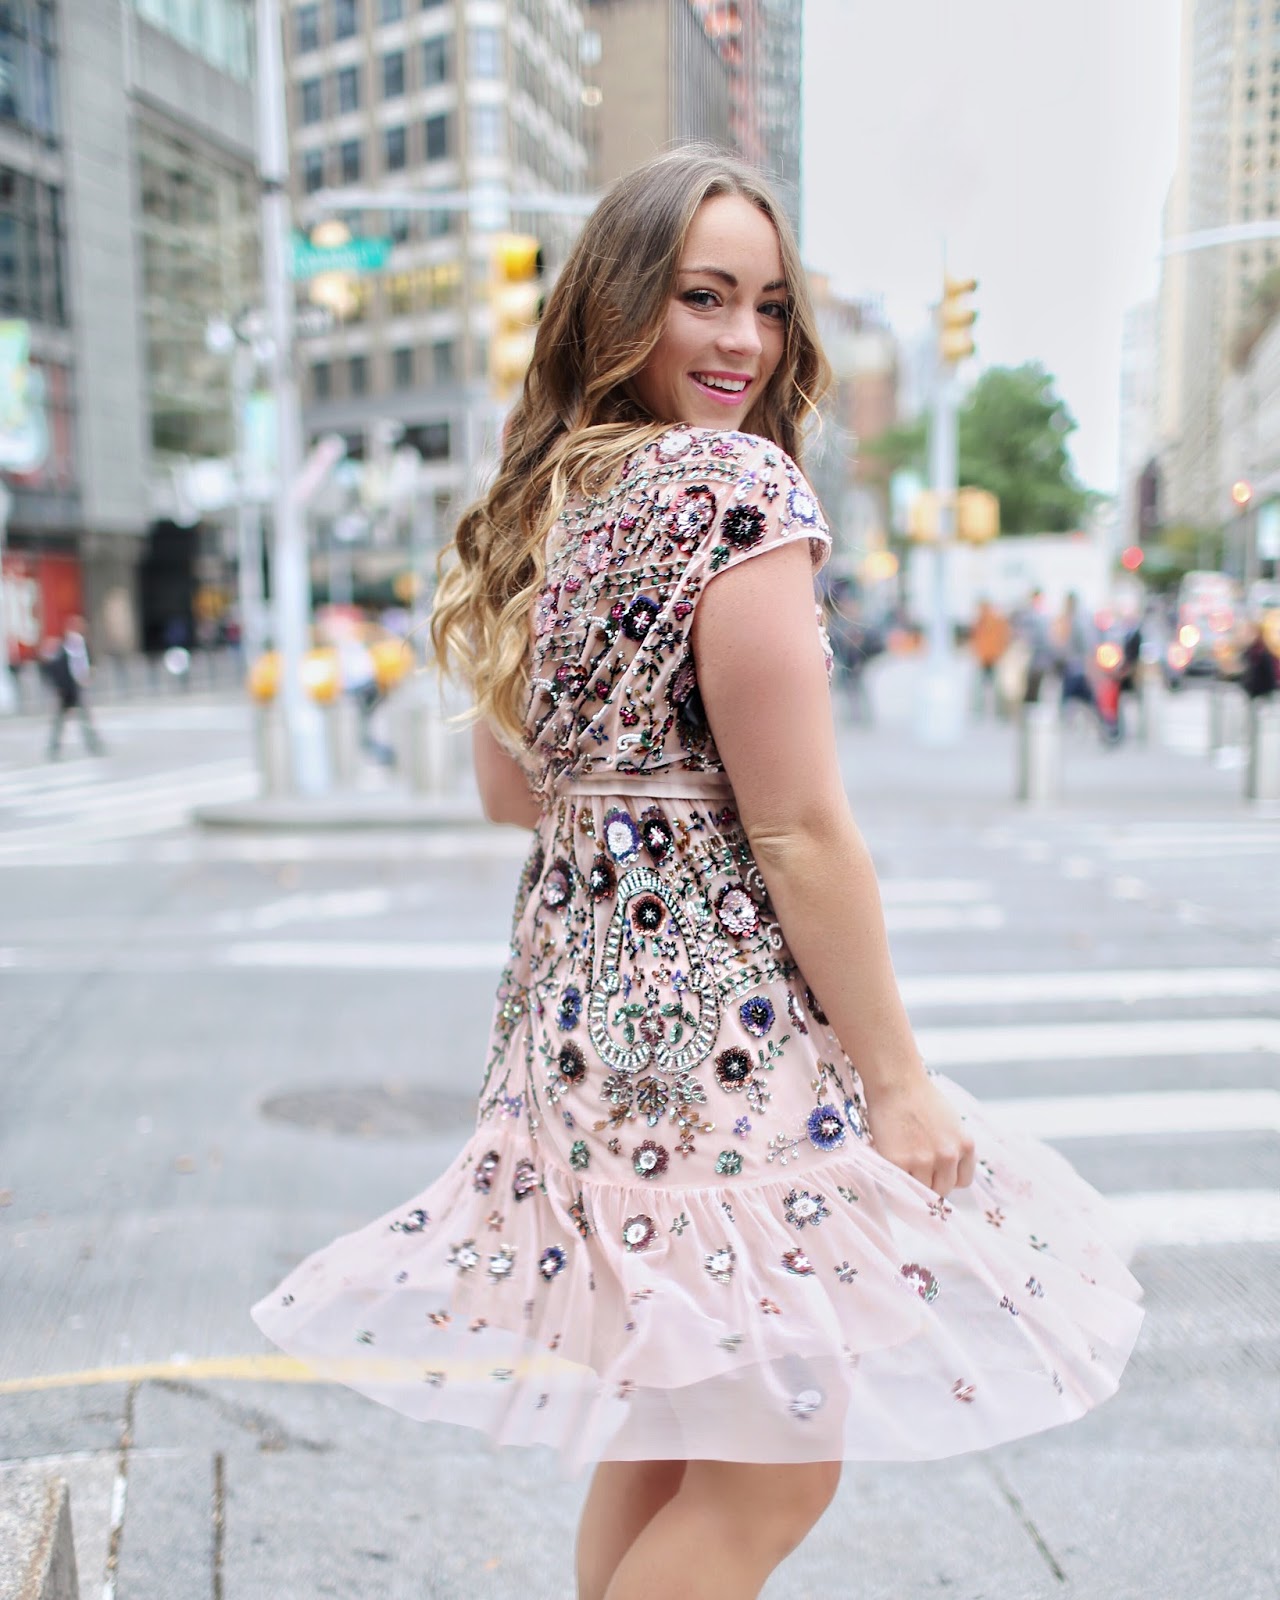 StyleLend Dress in NYC